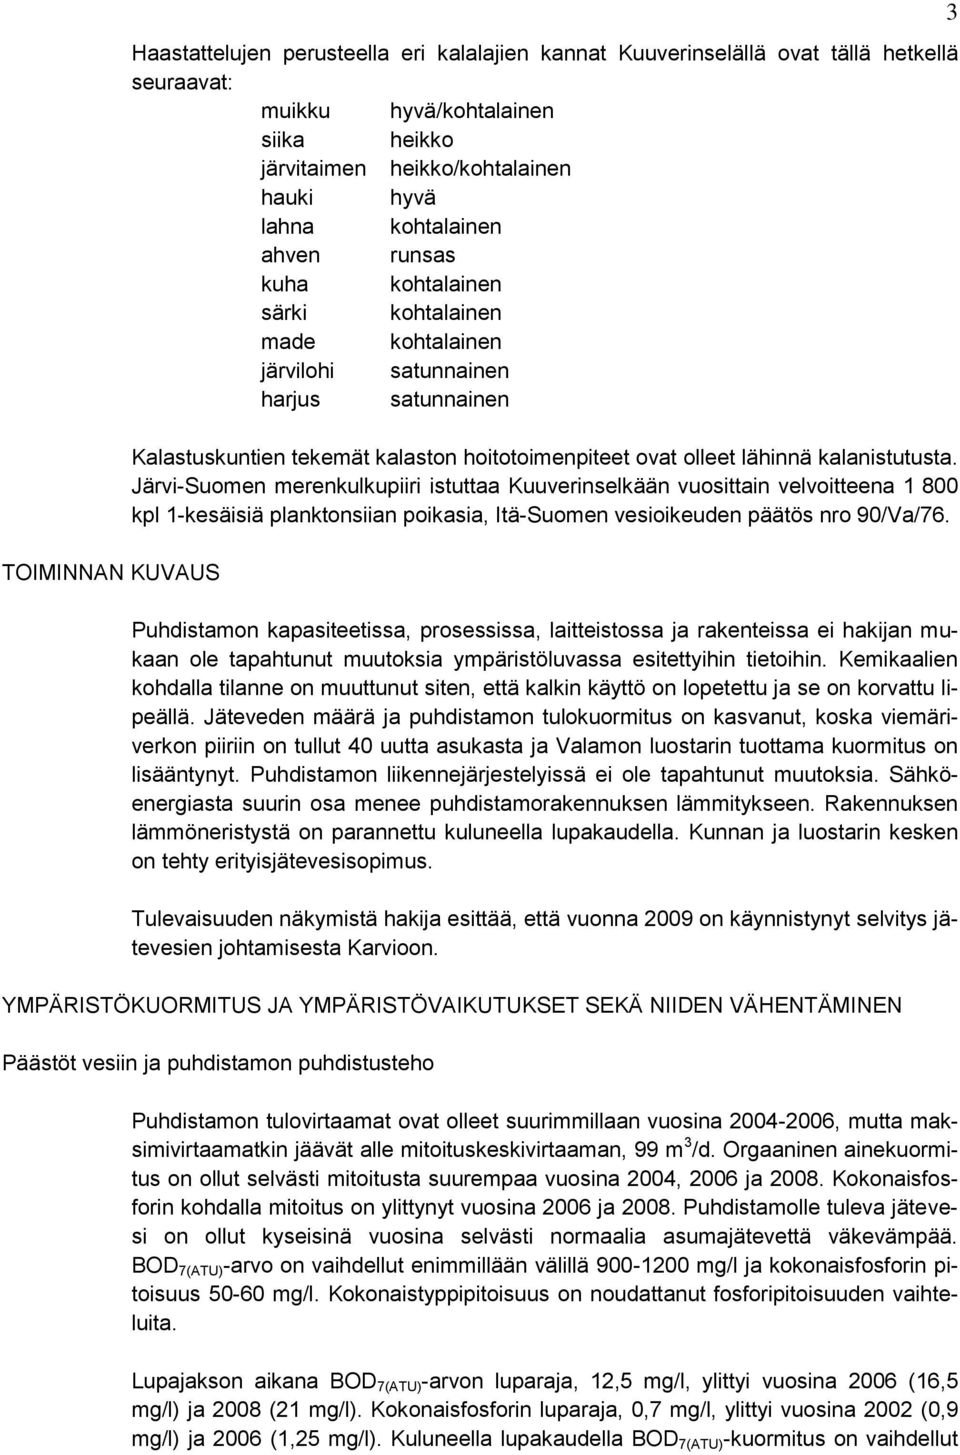 kalanistutusta. Järvi-Suomen merenkulkupiiri istuttaa Kuuverinselkään vuosittain velvoitteena 1 800 kpl 1-kesäisiä planktonsiian poikasia, Itä-Suomen vesioikeuden päätös nro 90/Va/76.